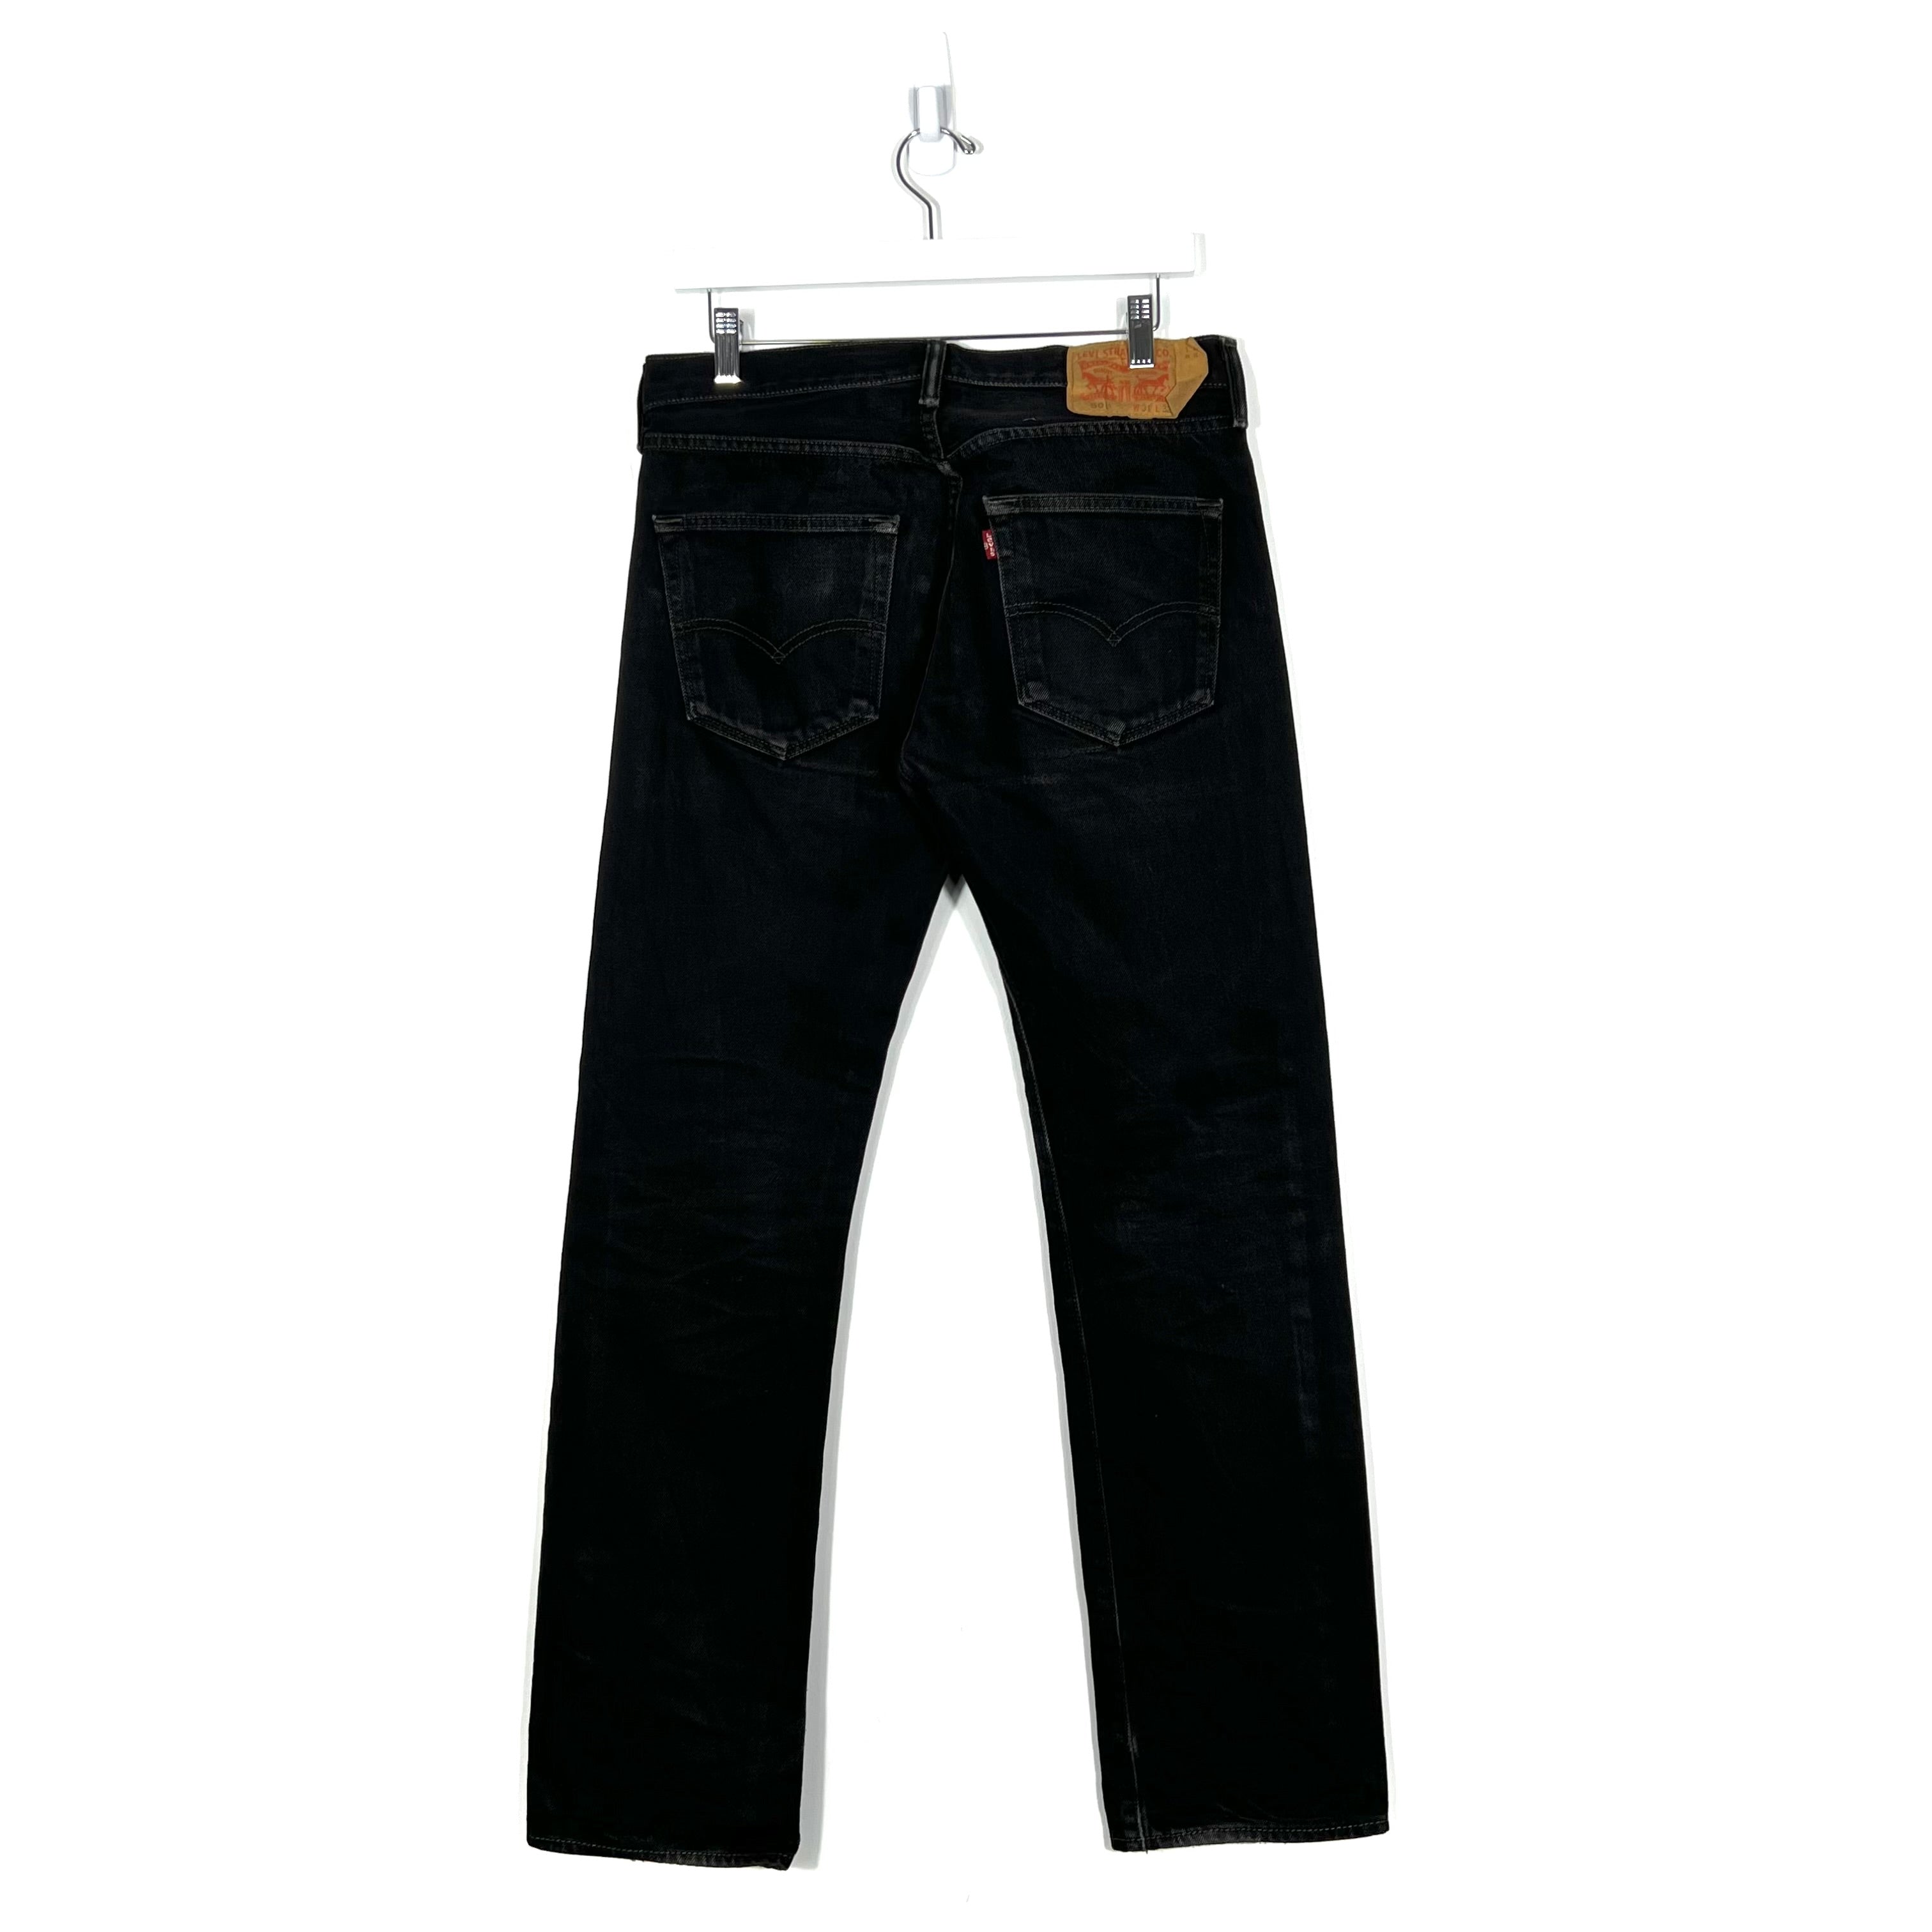 Vintage Levis 501 Jeans - Men's 31/32